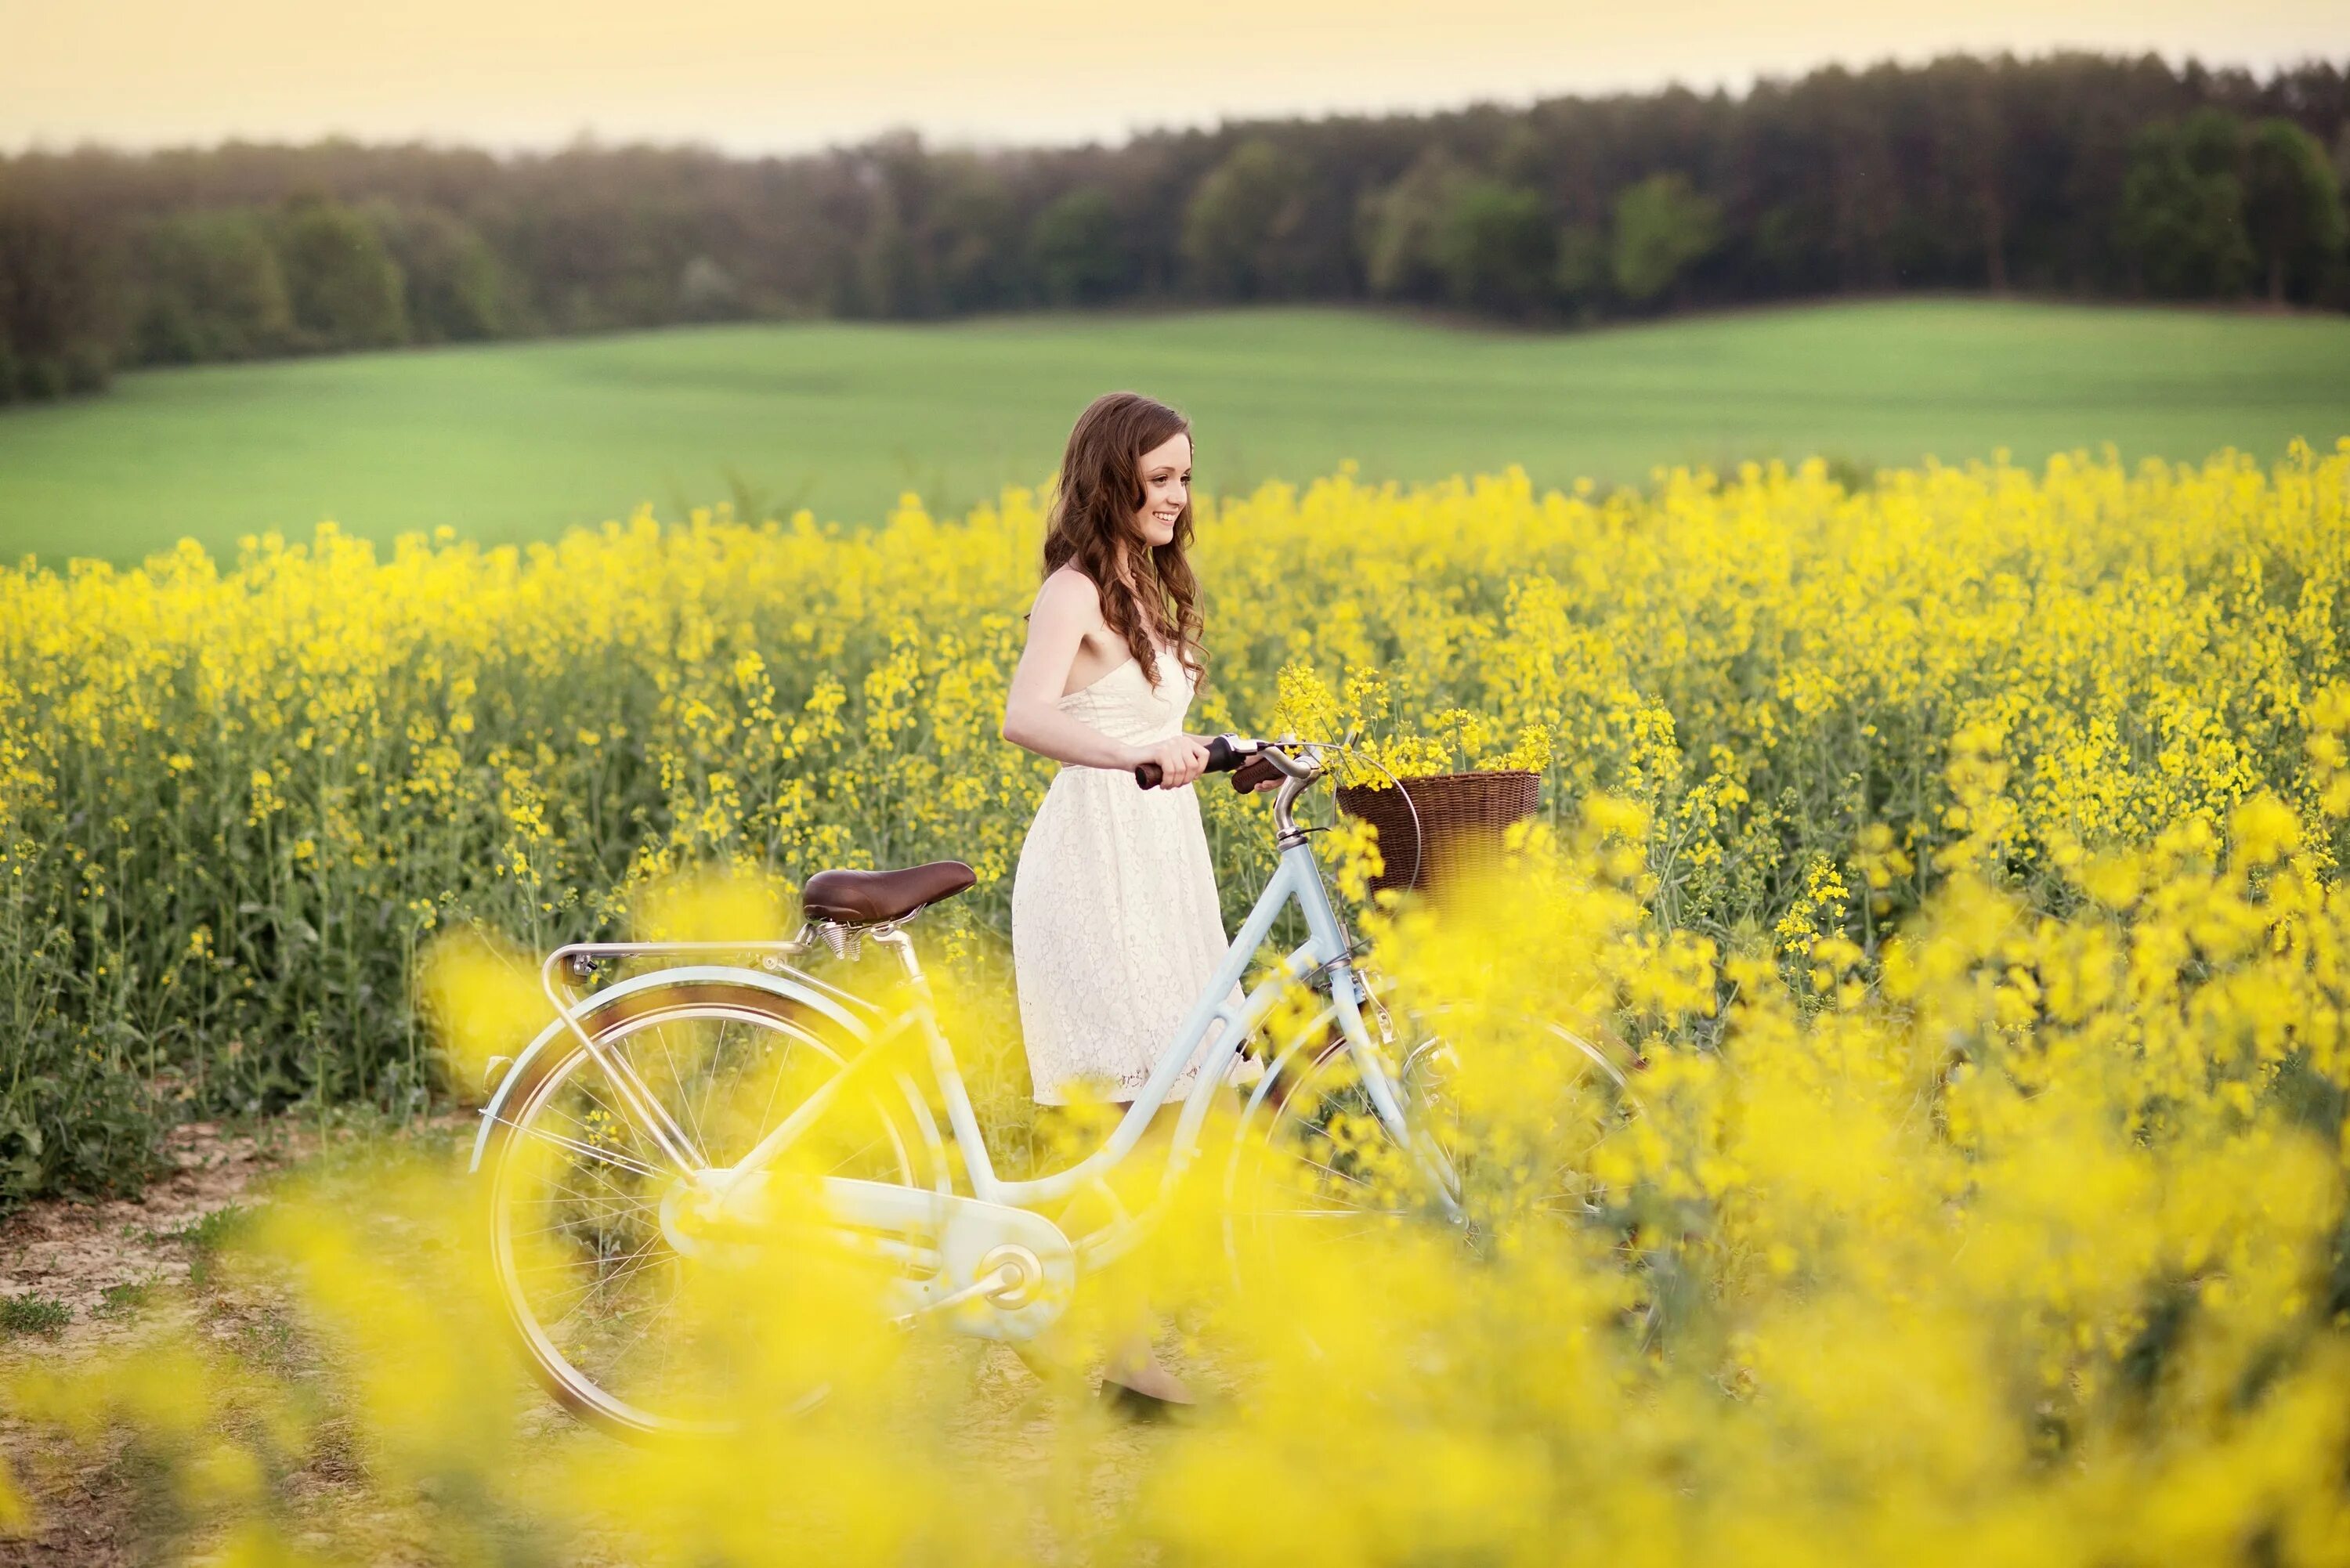 Девушка лето. Велосипед для девочки. Девушка на велосипеде. Девушка в поле. Цвета вызывающие радость